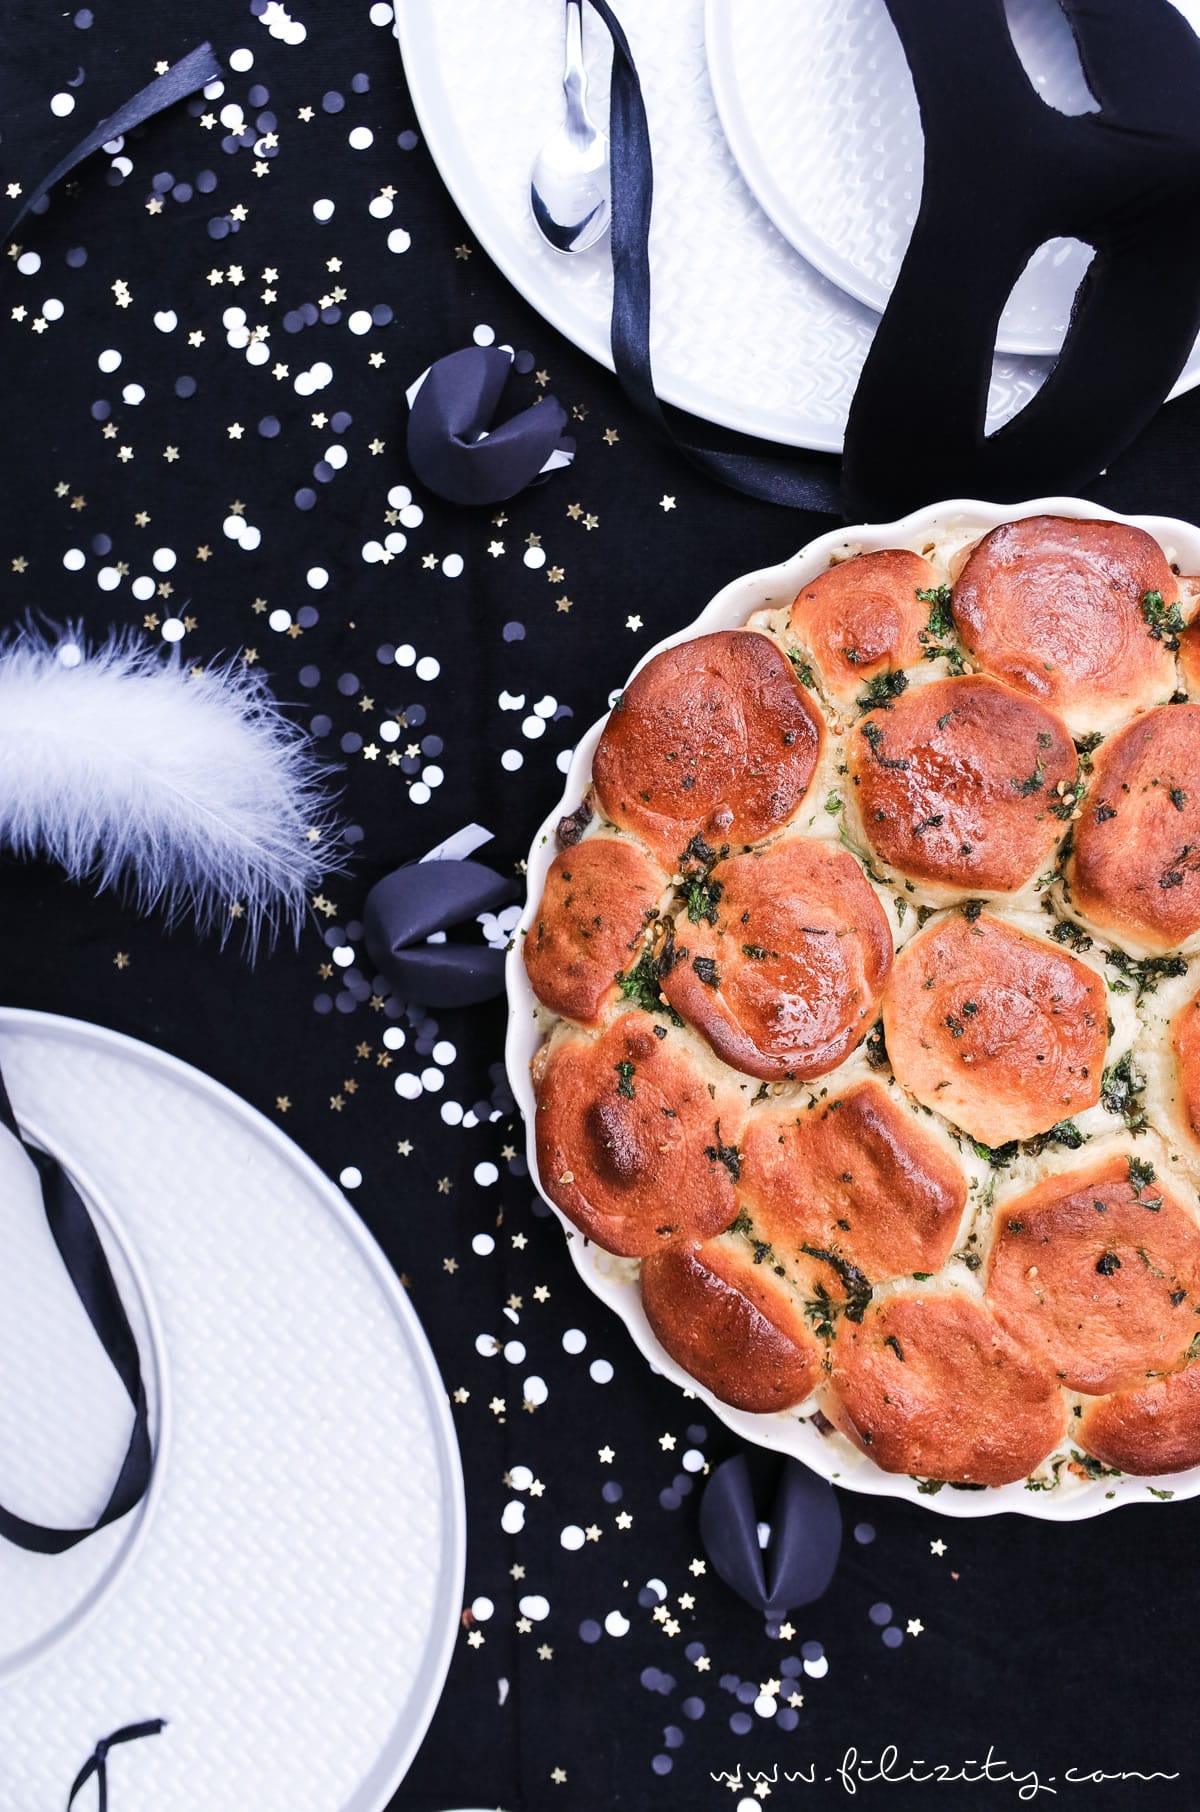 Schnelles Party-Rezept für Silvester: Gefüllte Pull Apart Brote | vegetarisch oder mit Fleisch | Filizity.com | Food-Blog aus dem Rheinland #partyfood #fingerfood #silvester #nye